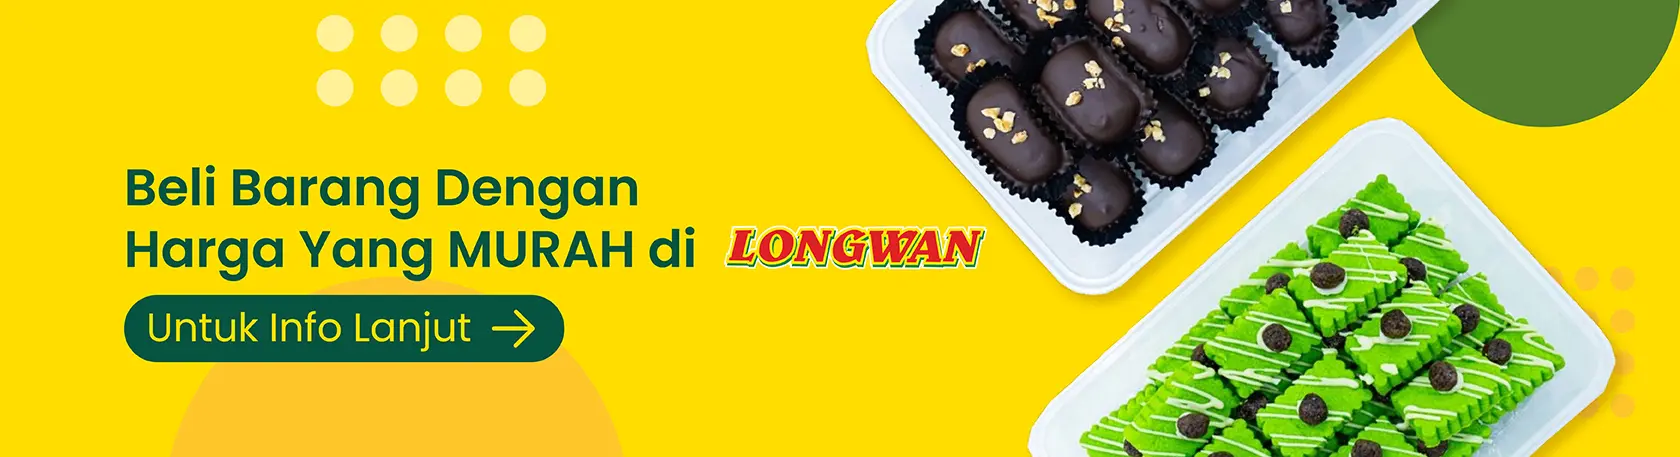 Longwan Promotion